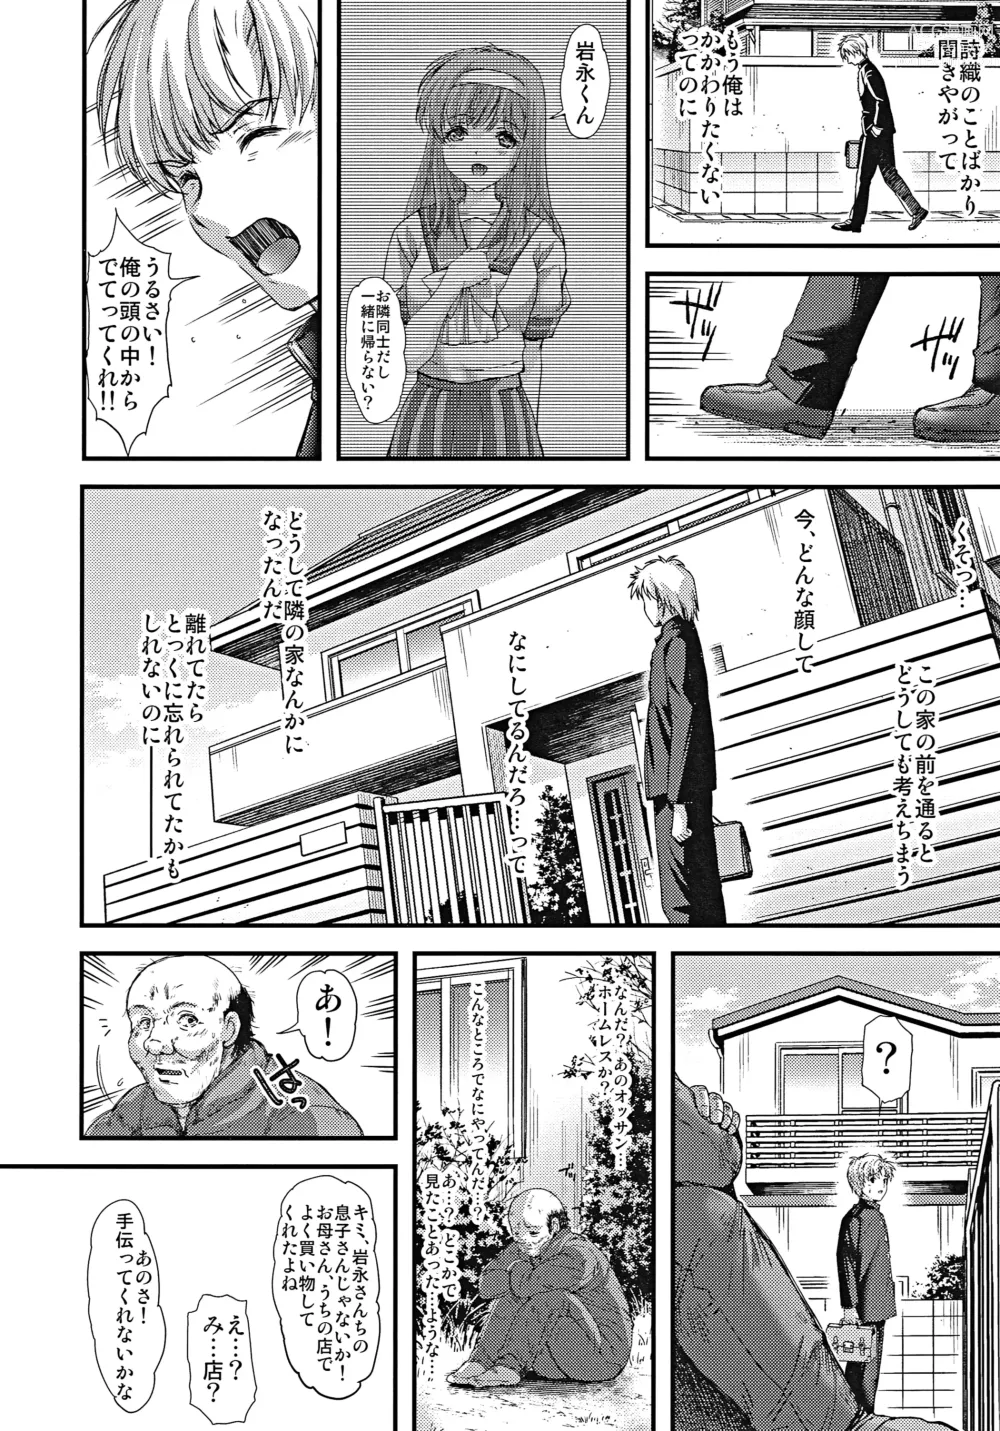 Page 17 of doujinshi Shiori Dai-Nijuunana-Shou Kago no Naka no Melancholic - Shiori Volume 27 The Melancholic In The Cage